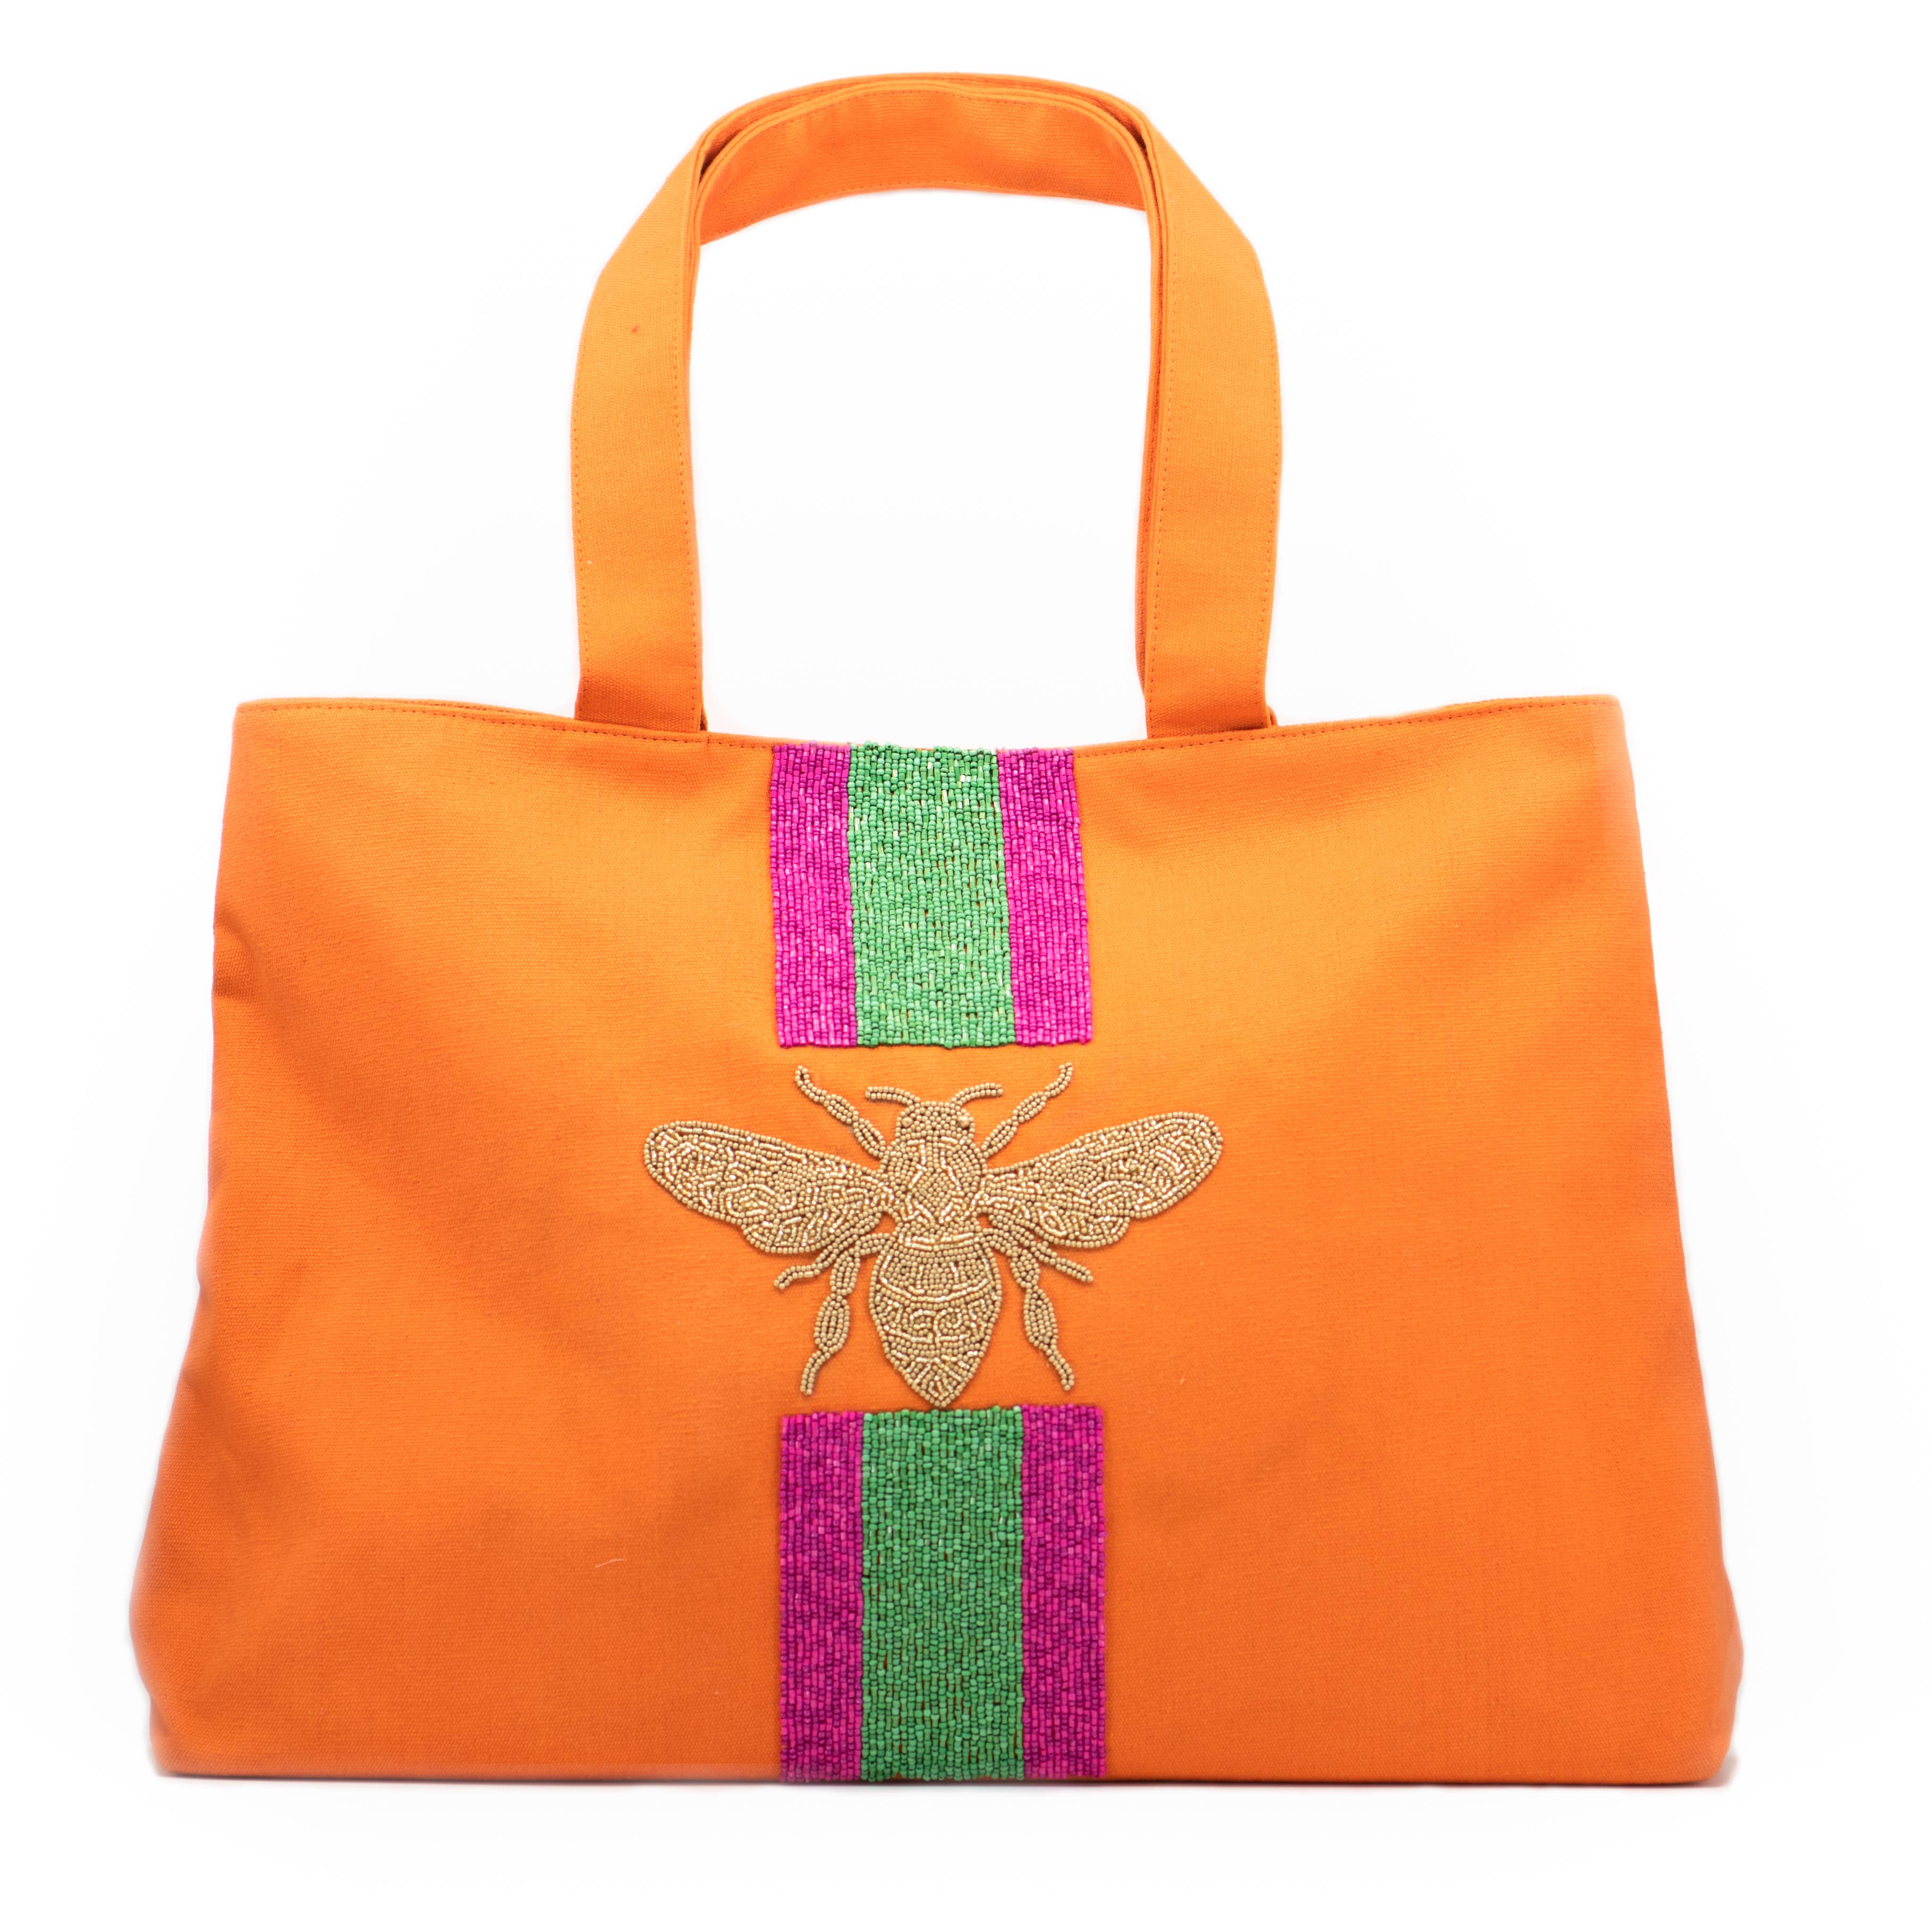 Tiana Bee Orange Tote Bag